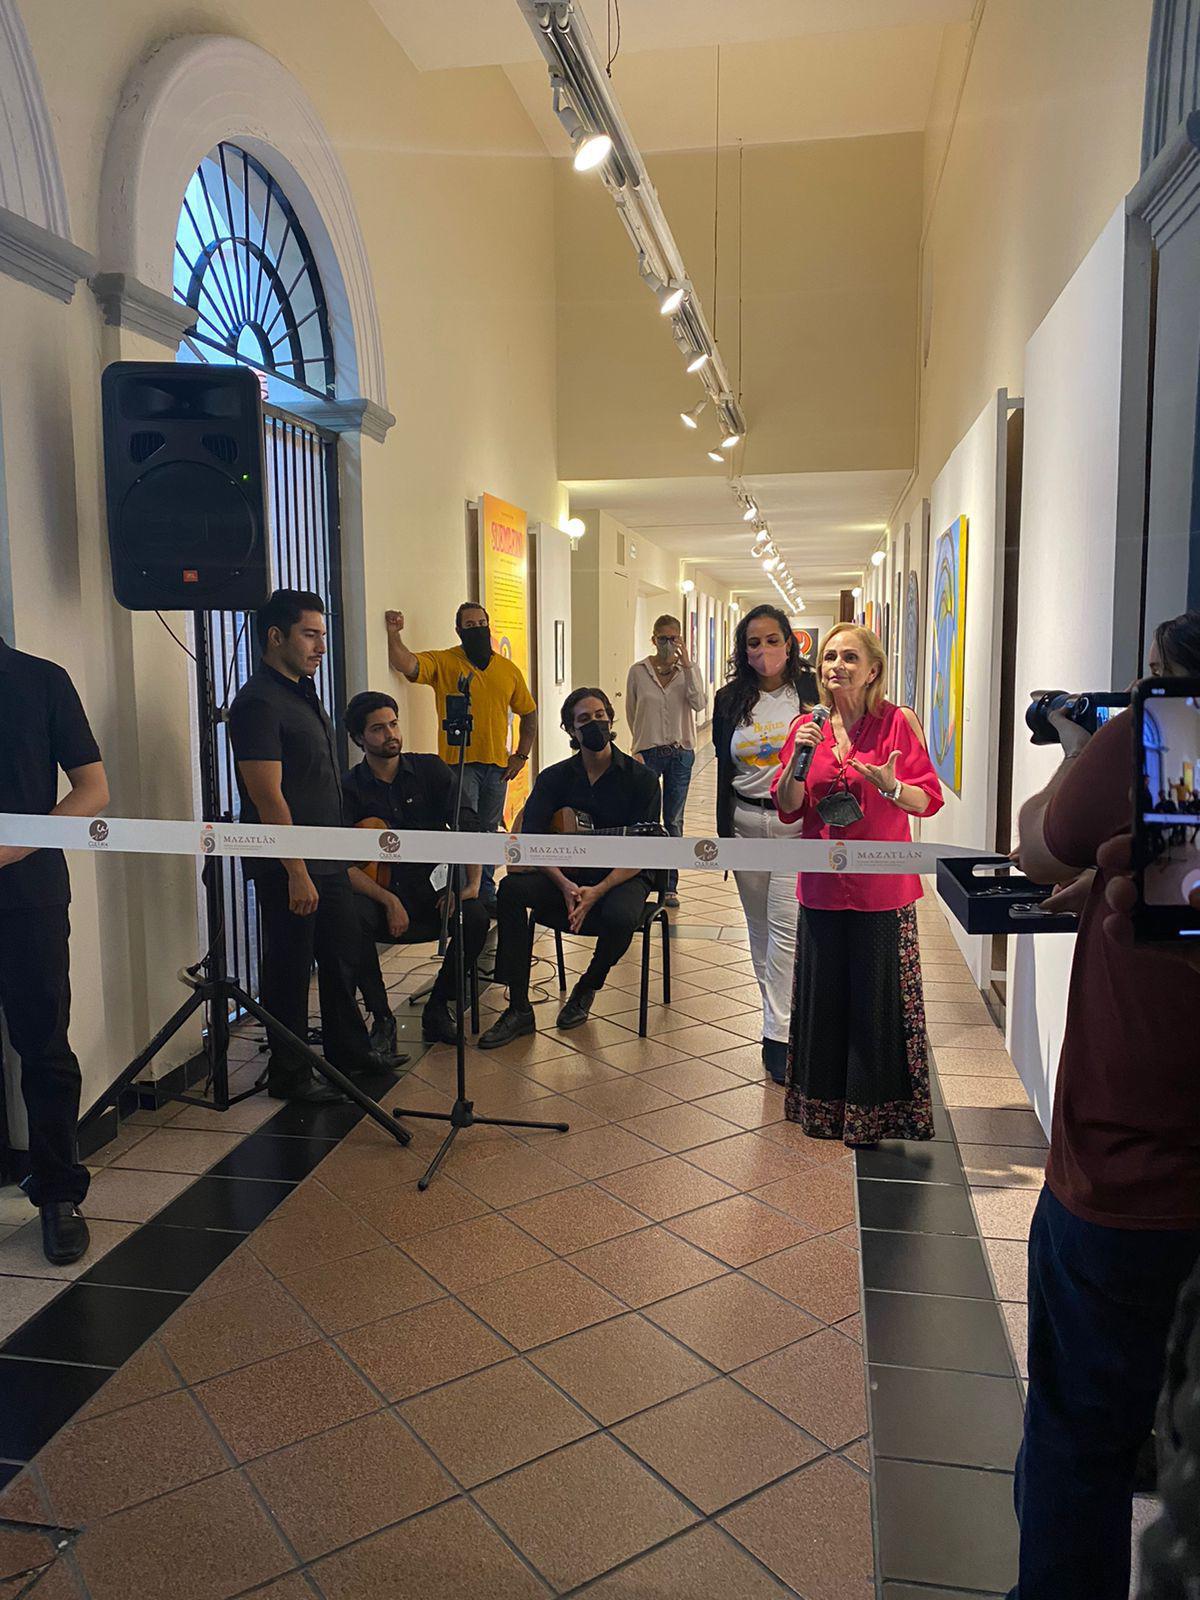 $!Zoila Fernández, directora artística del Instituto Municipal de Cultura, Turismo y Arte de Mazatlán, quien expresó las palabras de bienvenida.